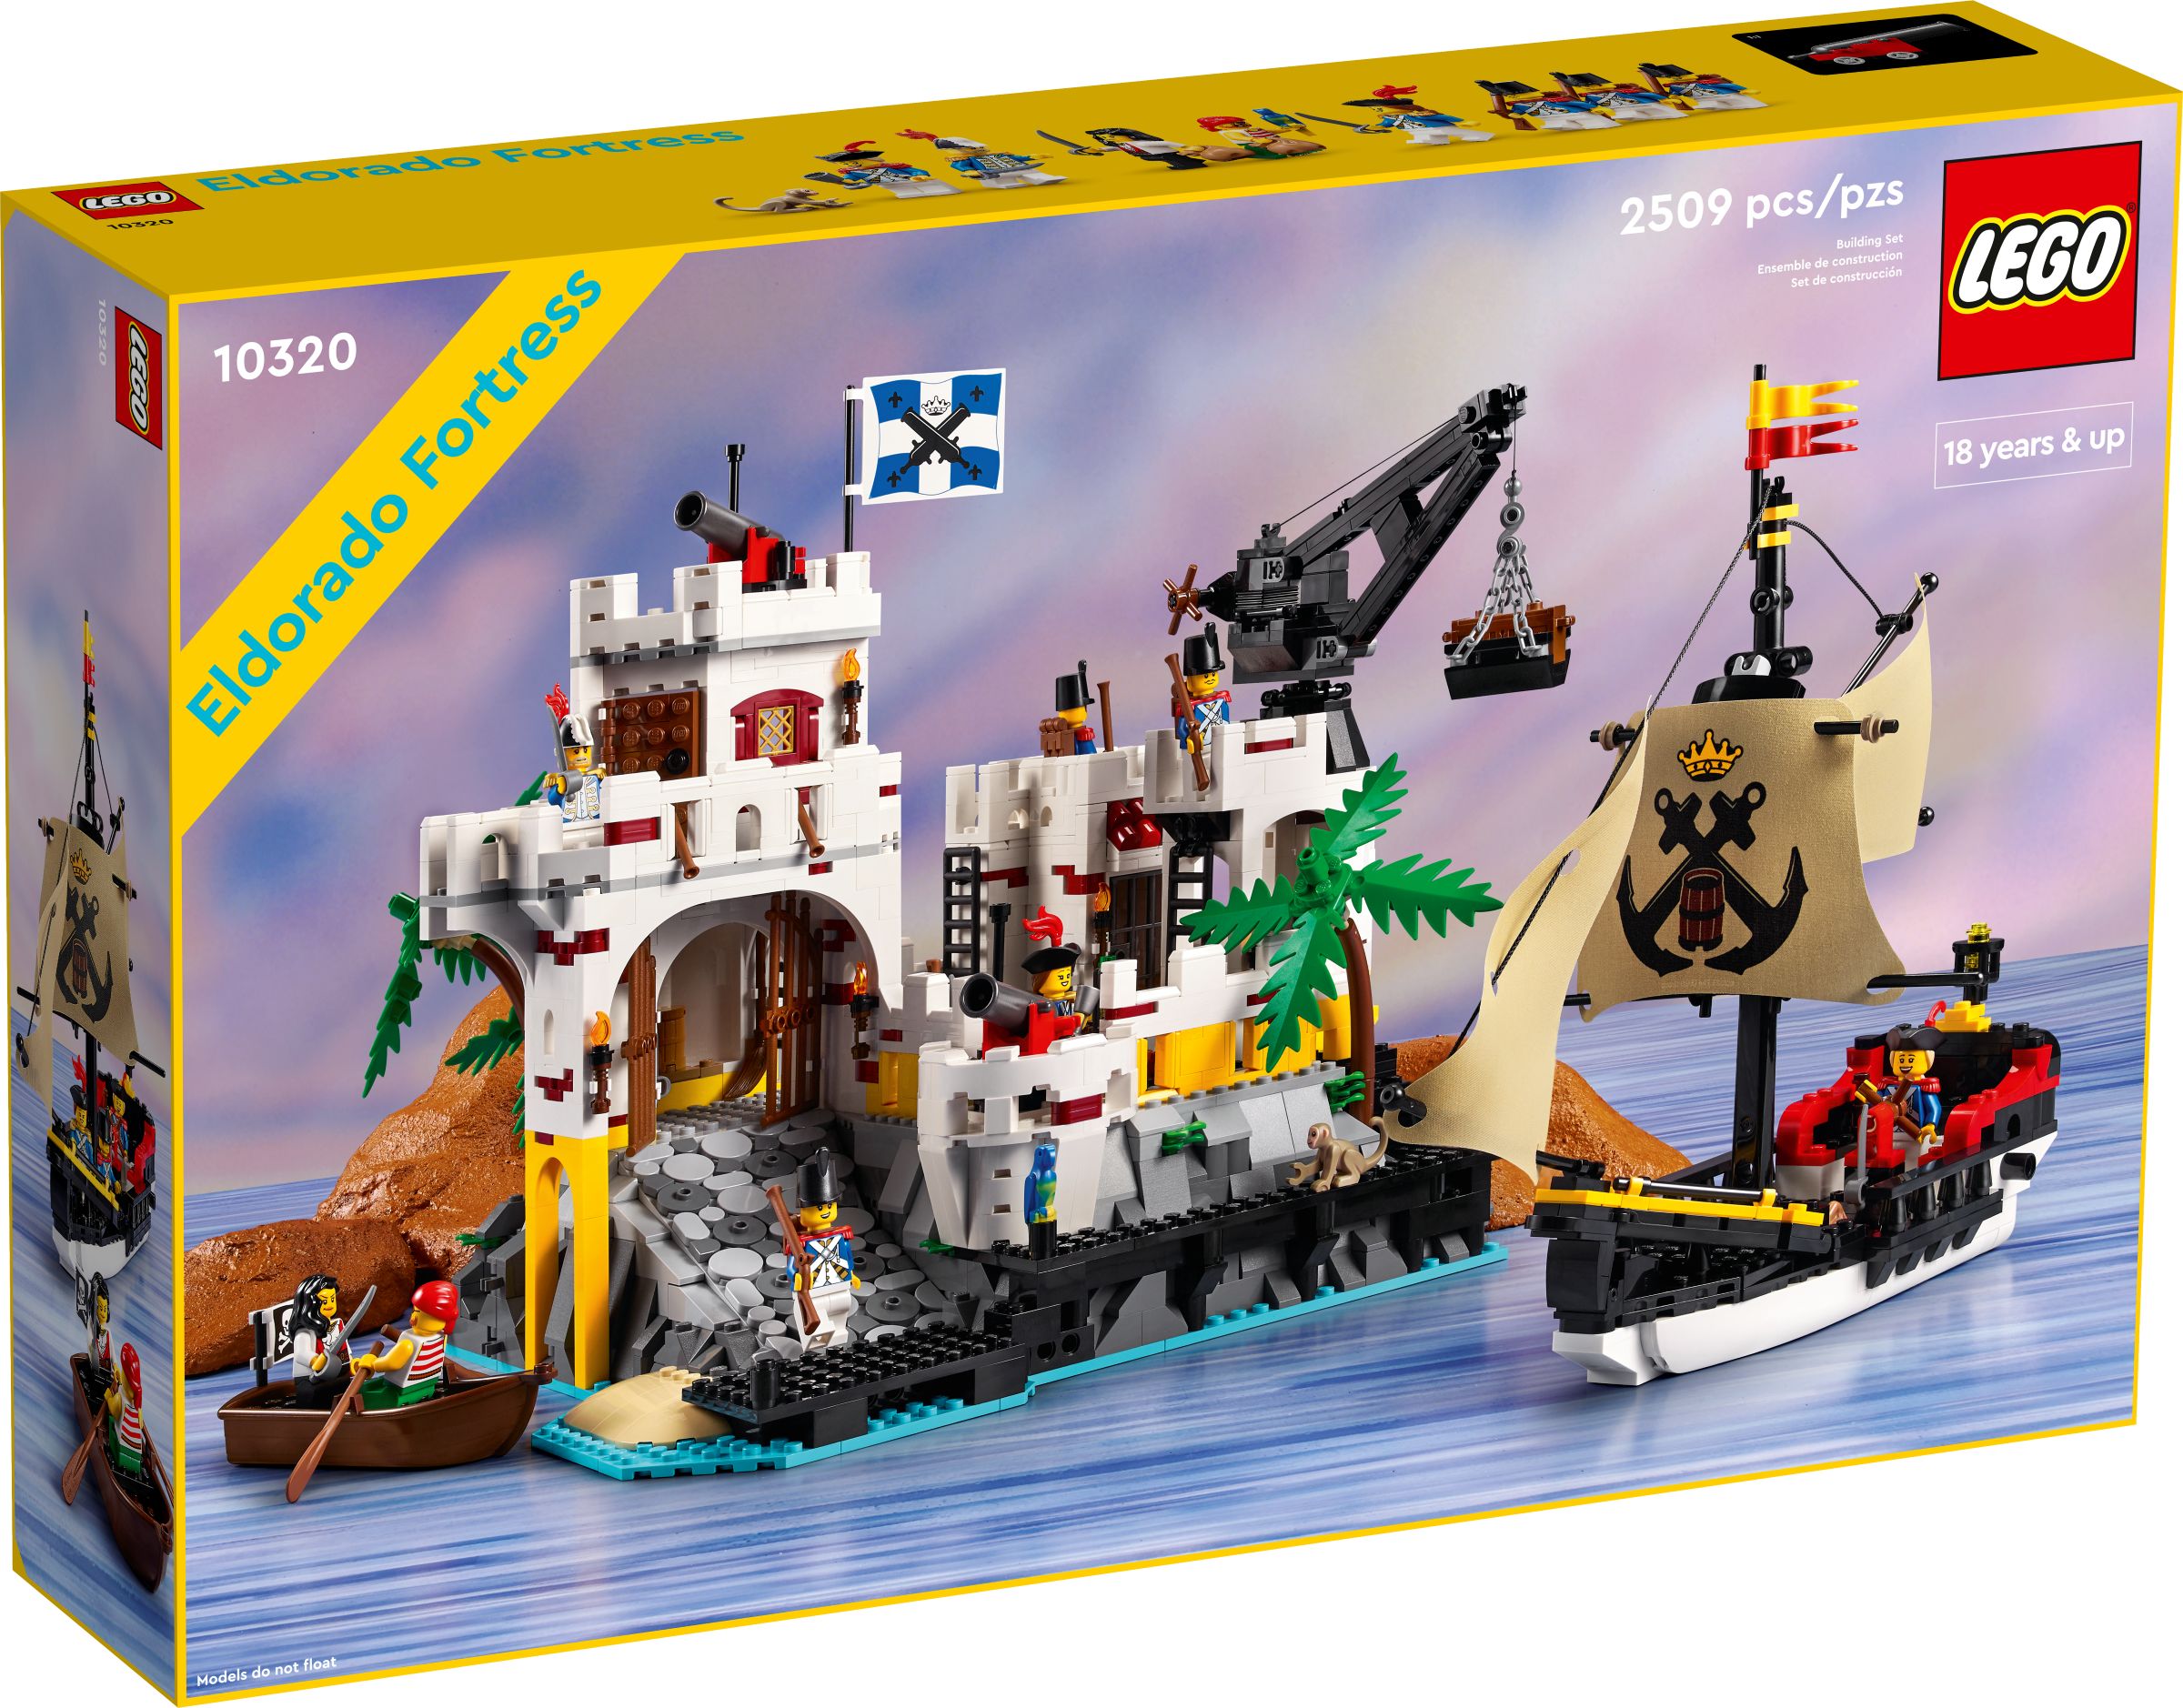 LEGO Advanced Models 10320 Eldorado-Festung LEGO_10320_alt1.jpg